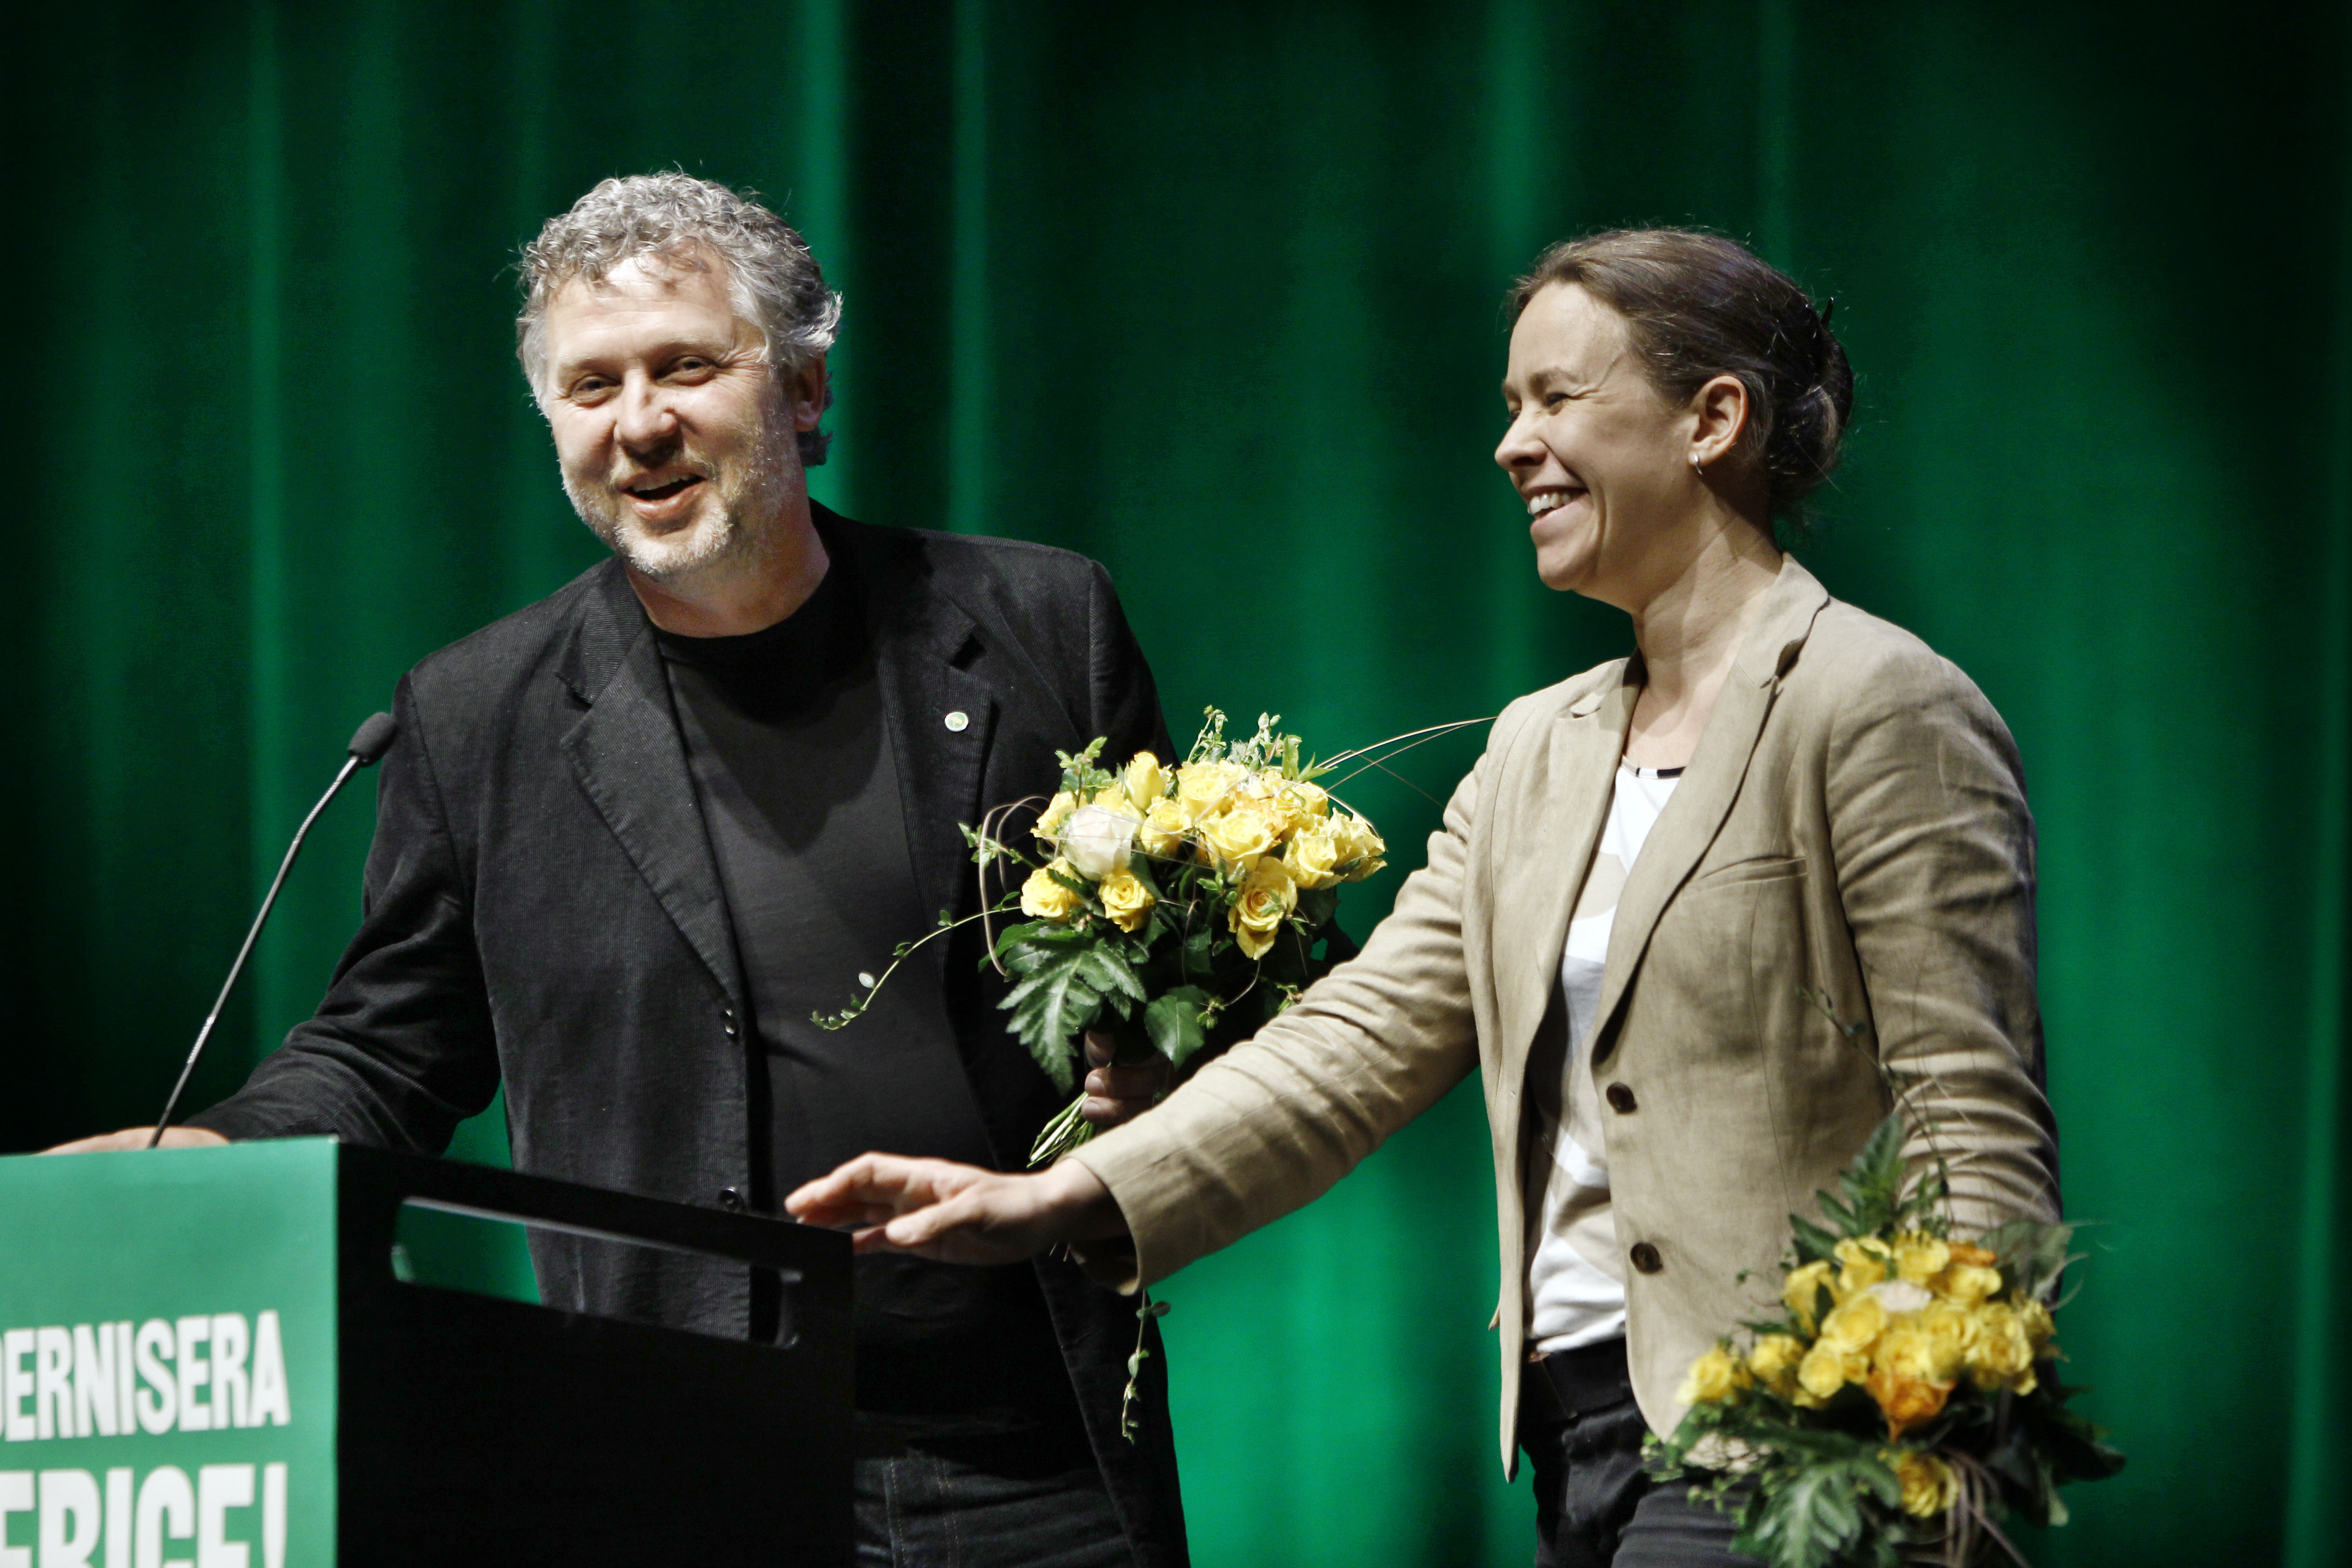 Miljöpartiet, Kongress, Maria Wetterstrand, Riksdagsvalet 2010, Peter Eriksson, språkrör